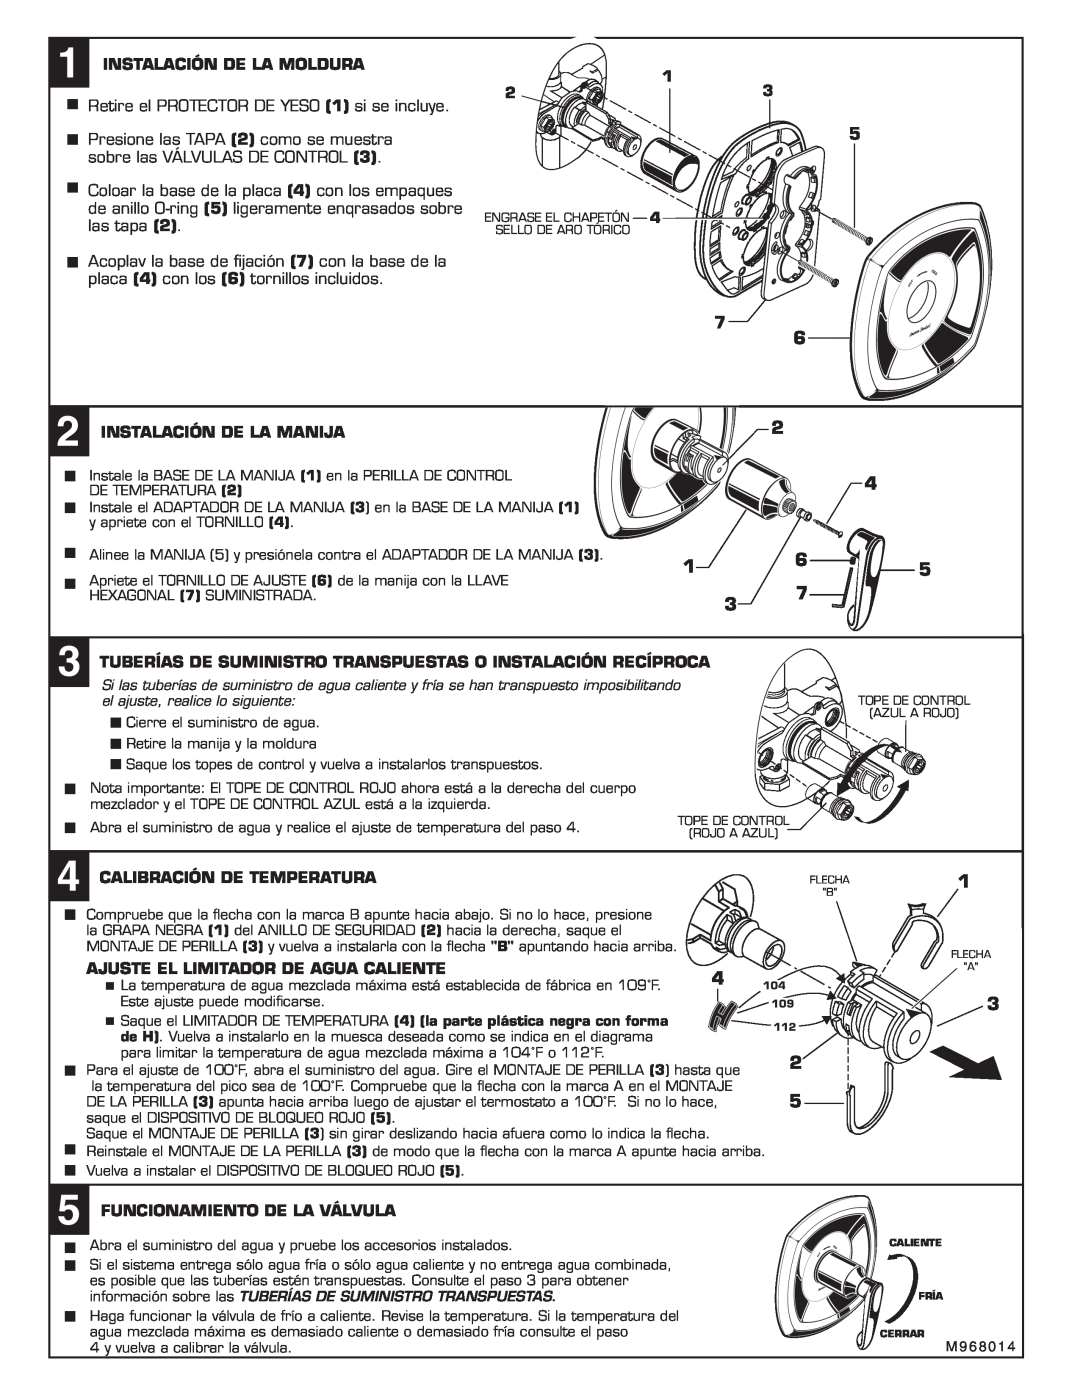 American Standard T005.730 installation instructions Instalación De La Moldura, Retire el PROTECTOR DE YESO 1 si se incluye 